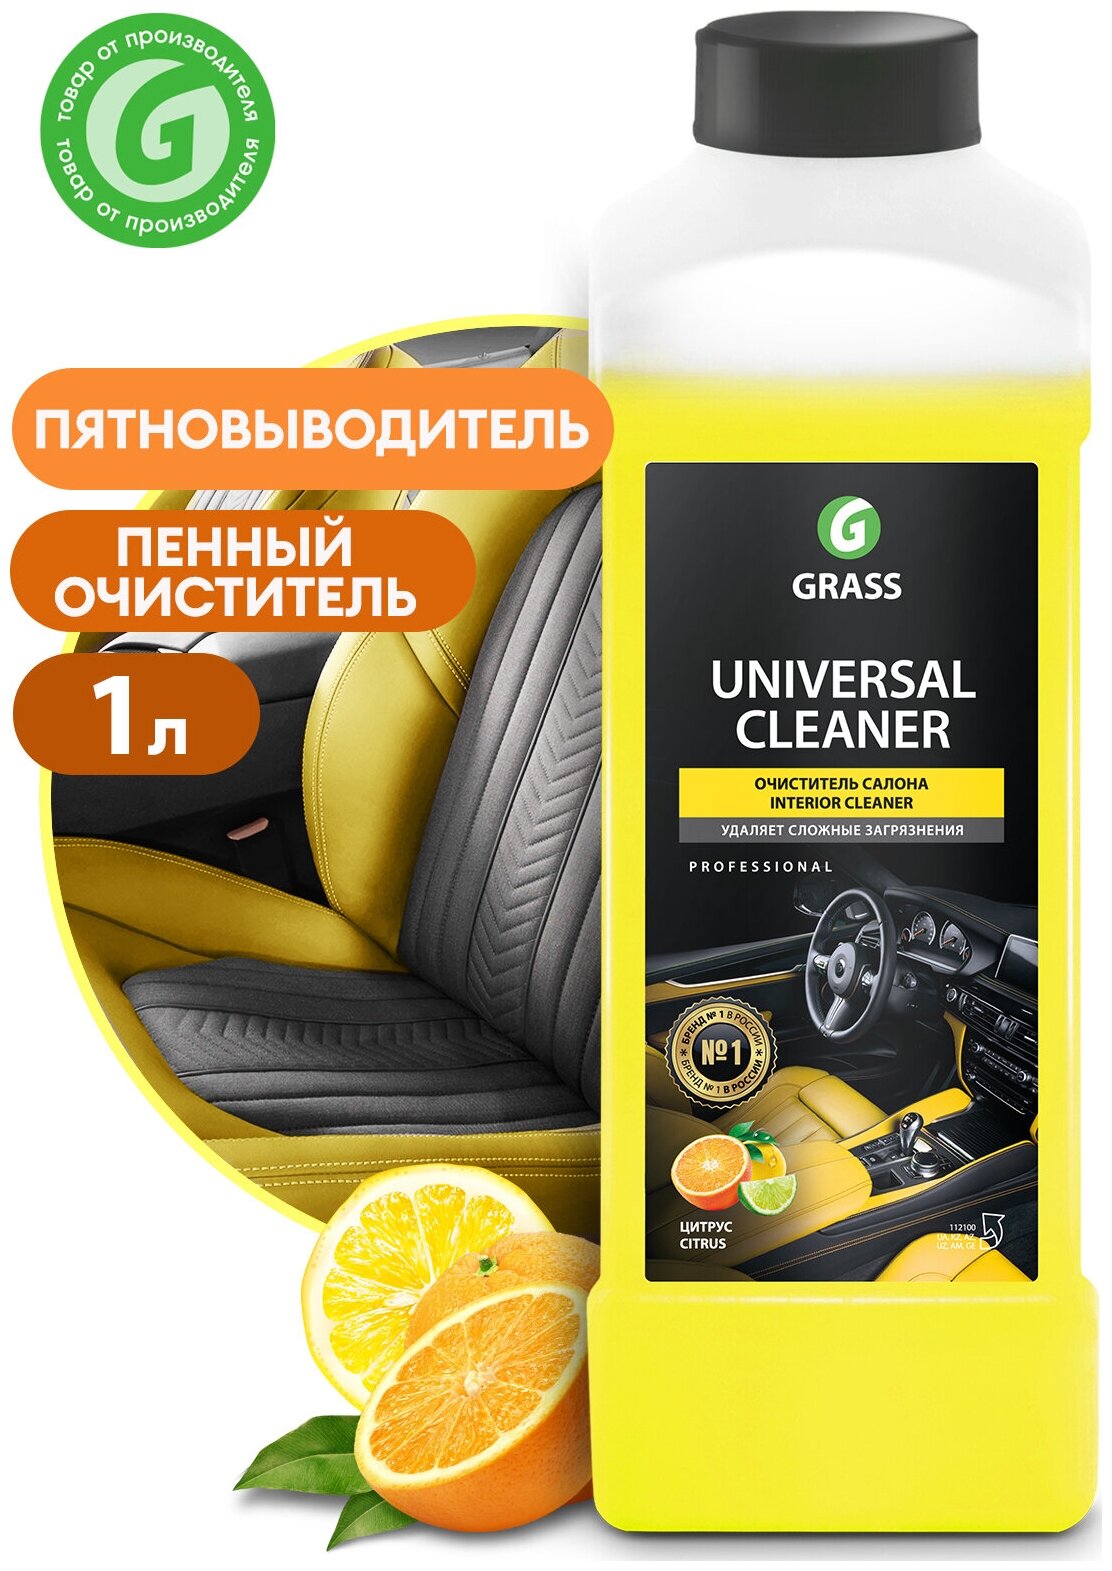 Очиститель салона Universal cleaner, 1 л